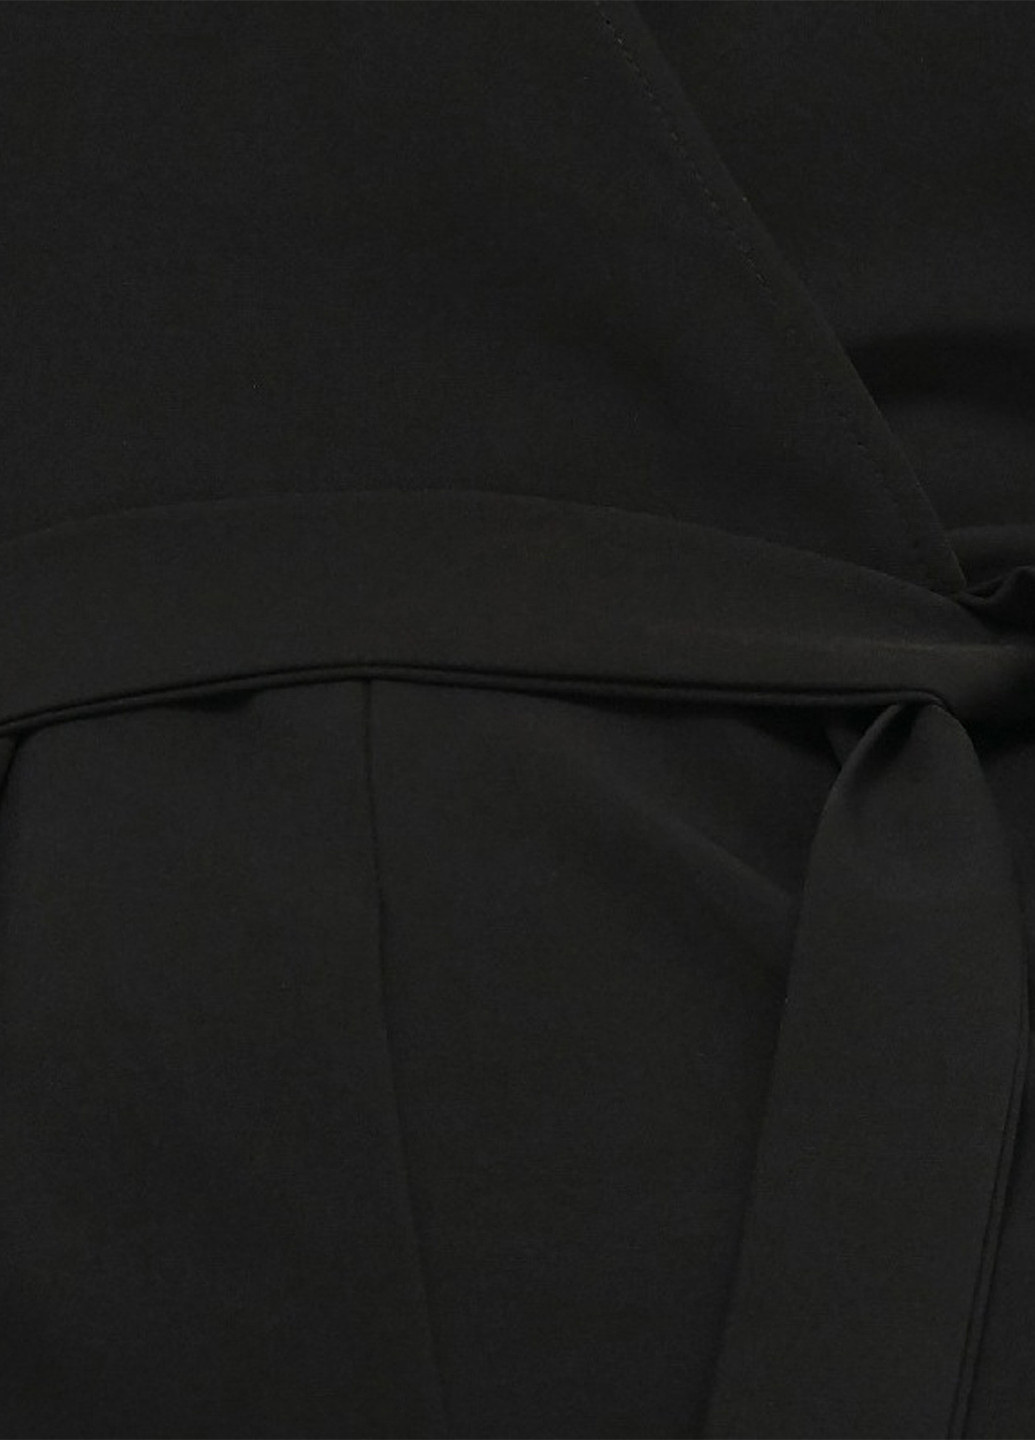 Комбинезон NA-KD комбинезон-брюки однотонный чёрный деловой полиэстер